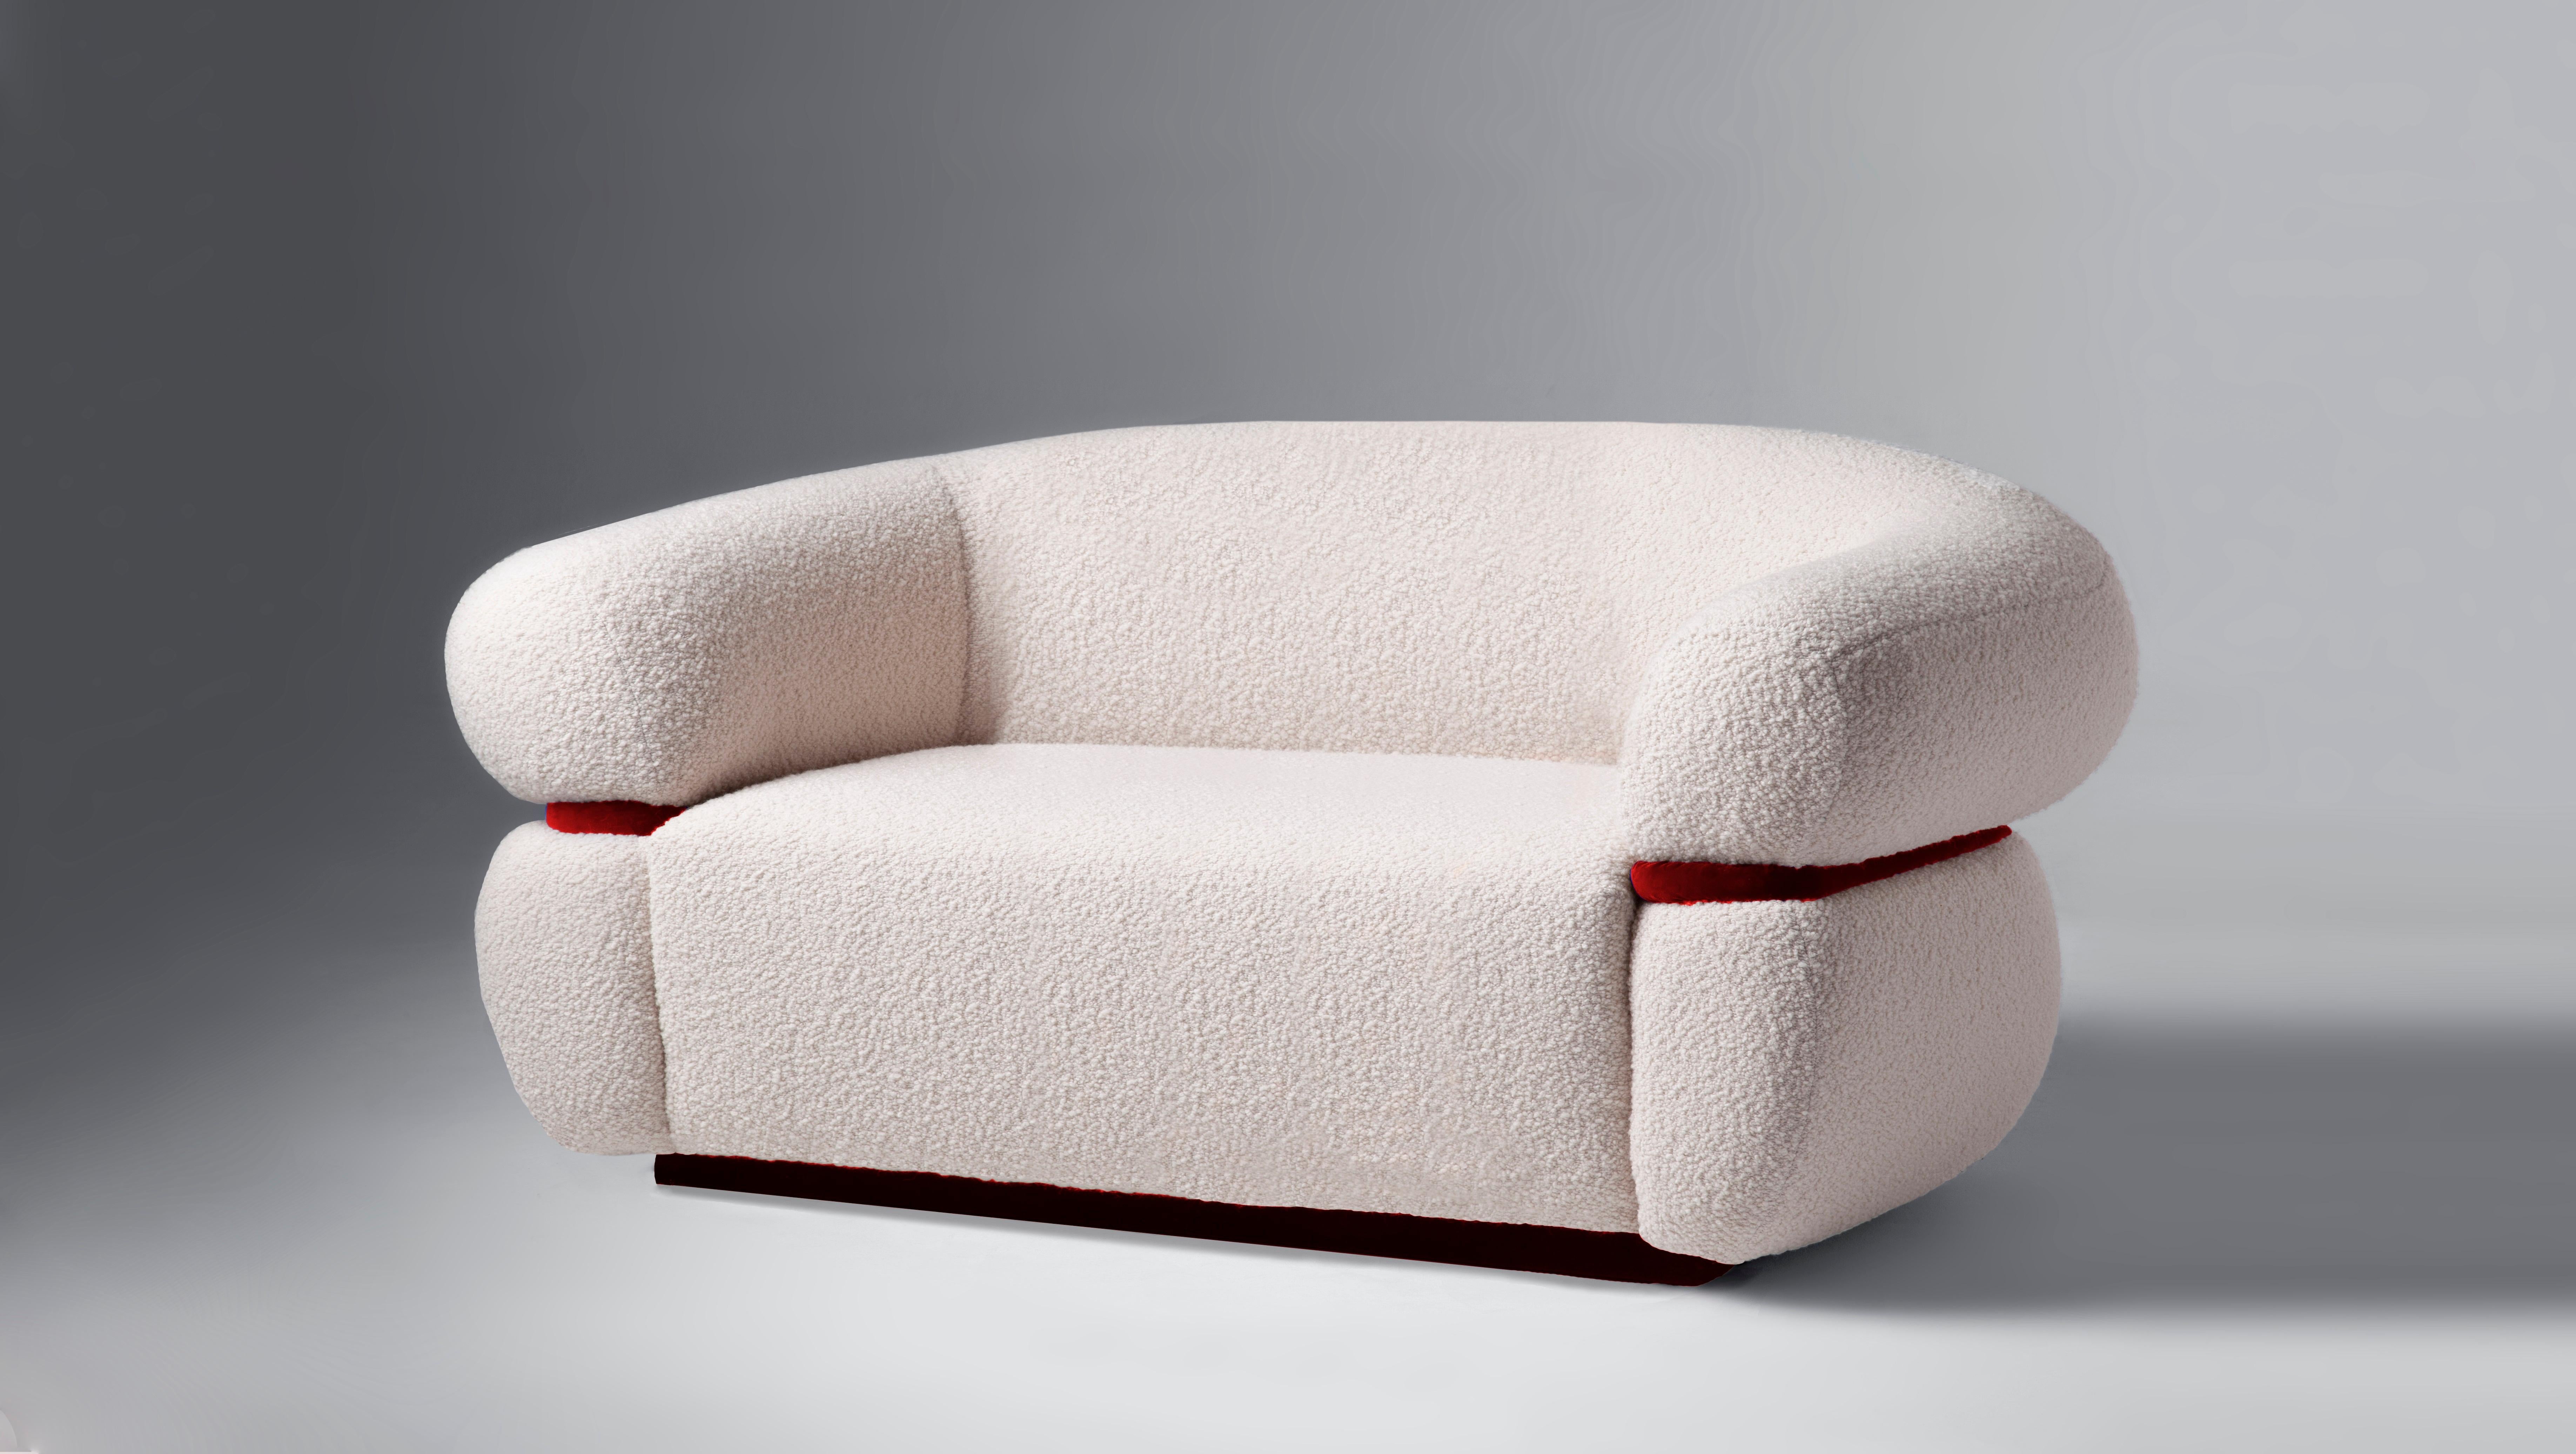 Wie eine warme Umarmung empfängt Sie das Malibu Sofa zum Verweilen und Entspannen. Als gehobene Hommage an das goldene Zeitalter des Midcentury-Designs und der organischen Architektur strahlt er durch seine ungewöhnlichen Proportionen und starken